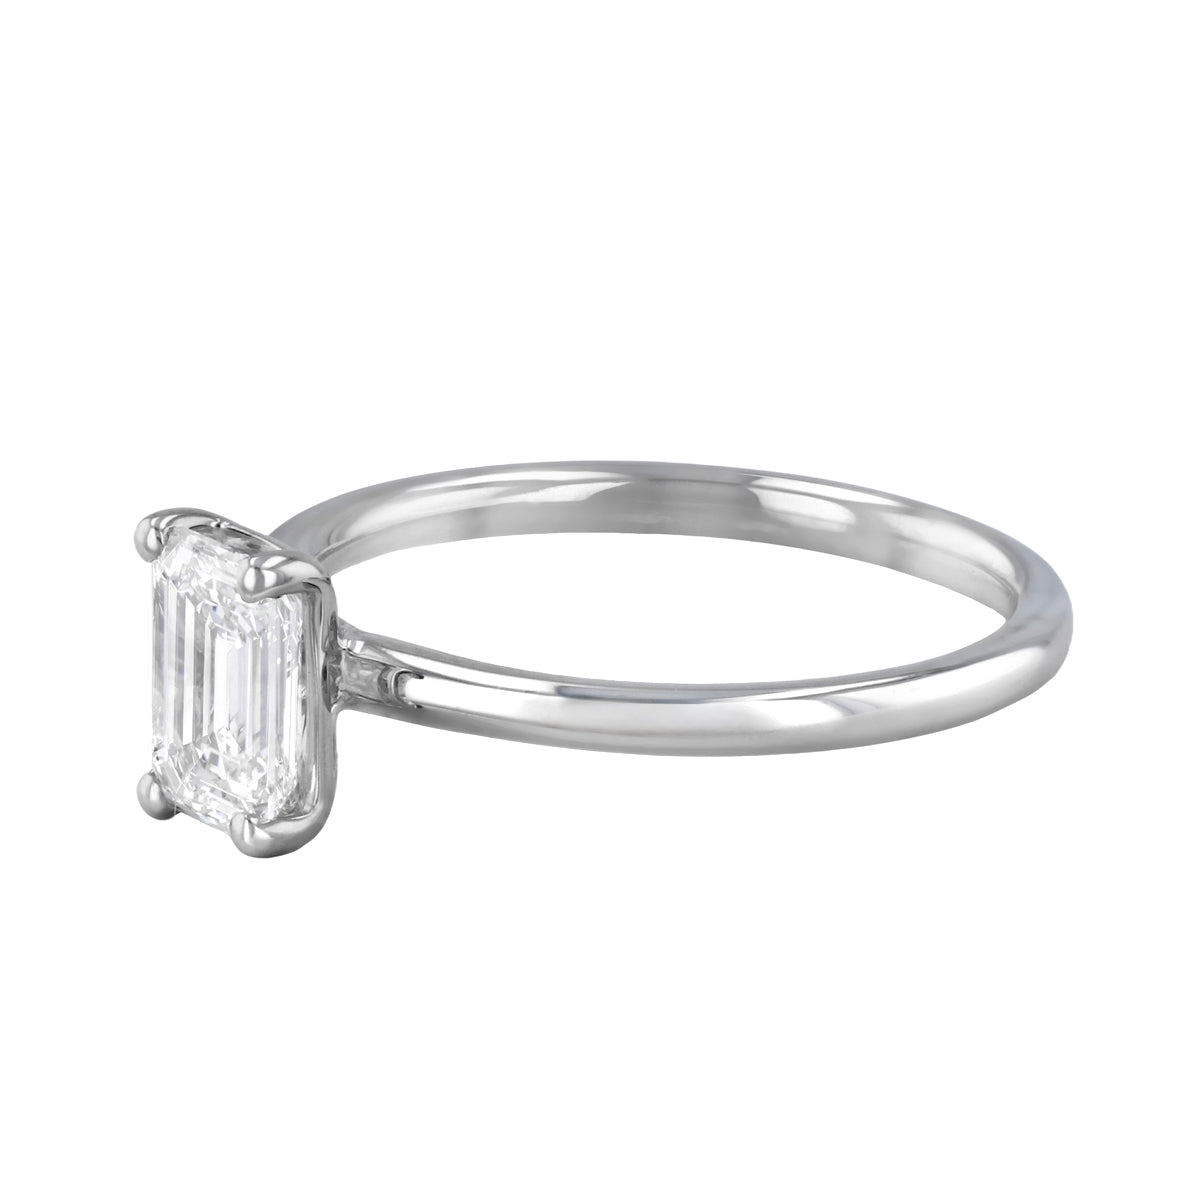 1-50ct-sofia-emerald-cut-solitaire-diamond-engagement-ring-platinum